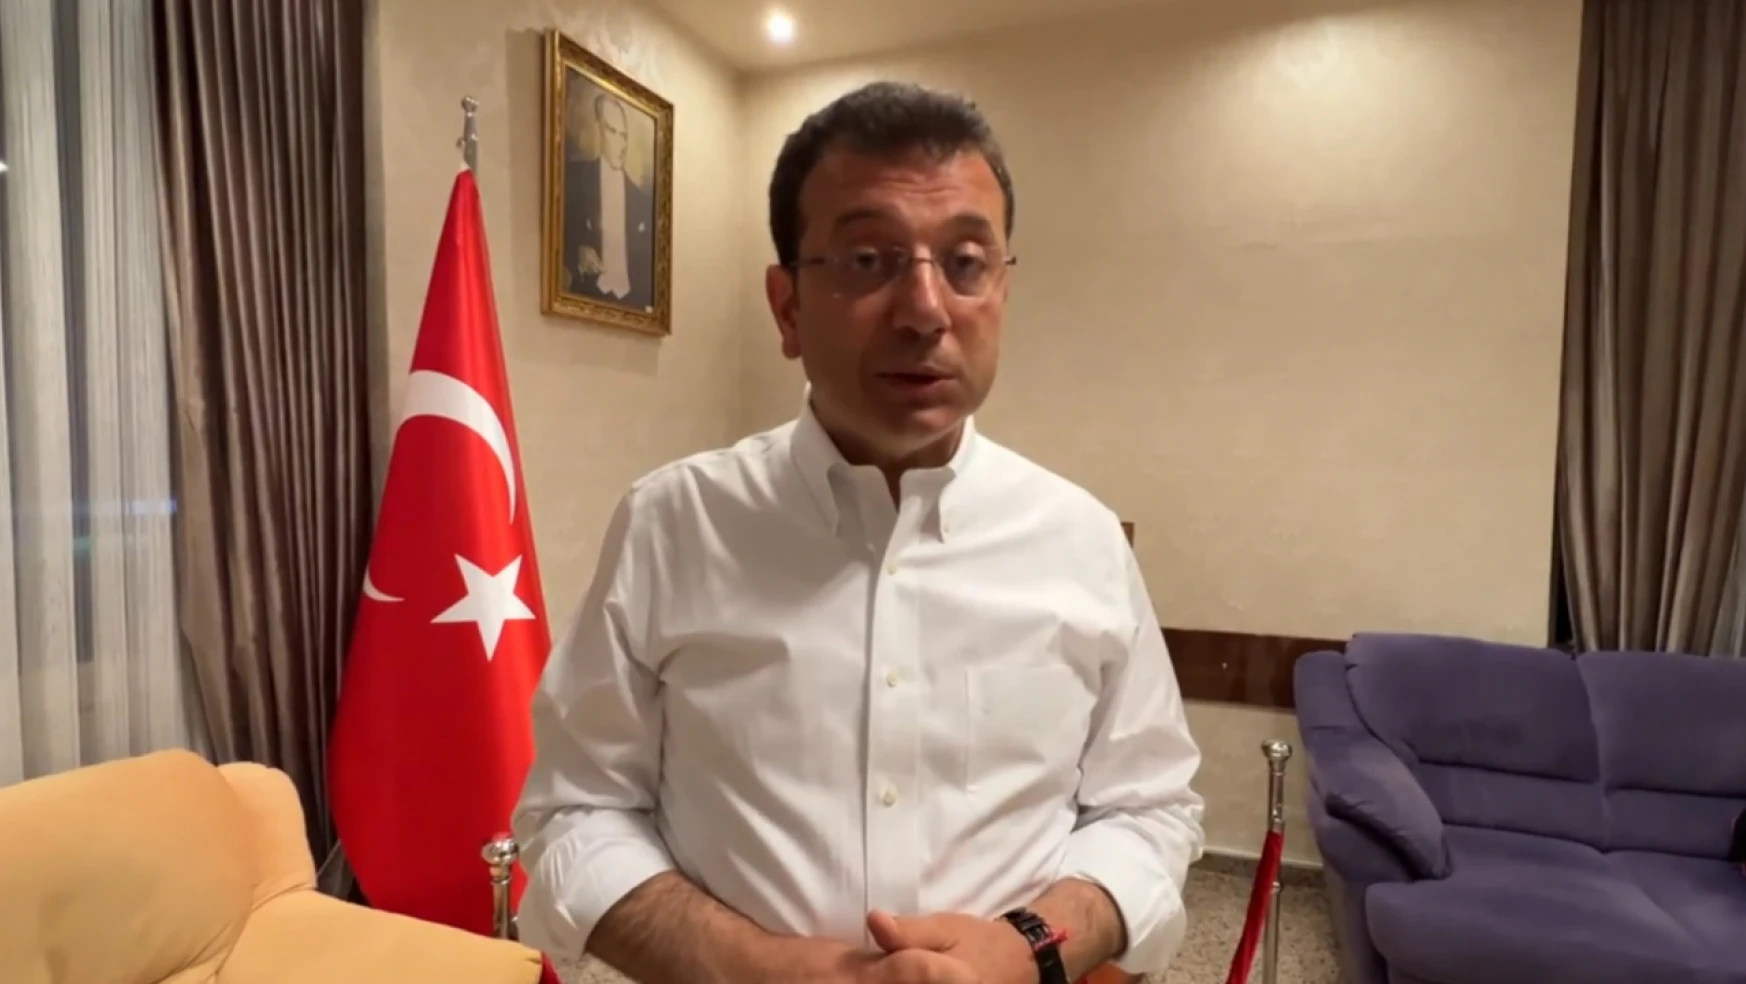 İmamoğlu'ndan Erzurum mitingi saldırı açıklaması